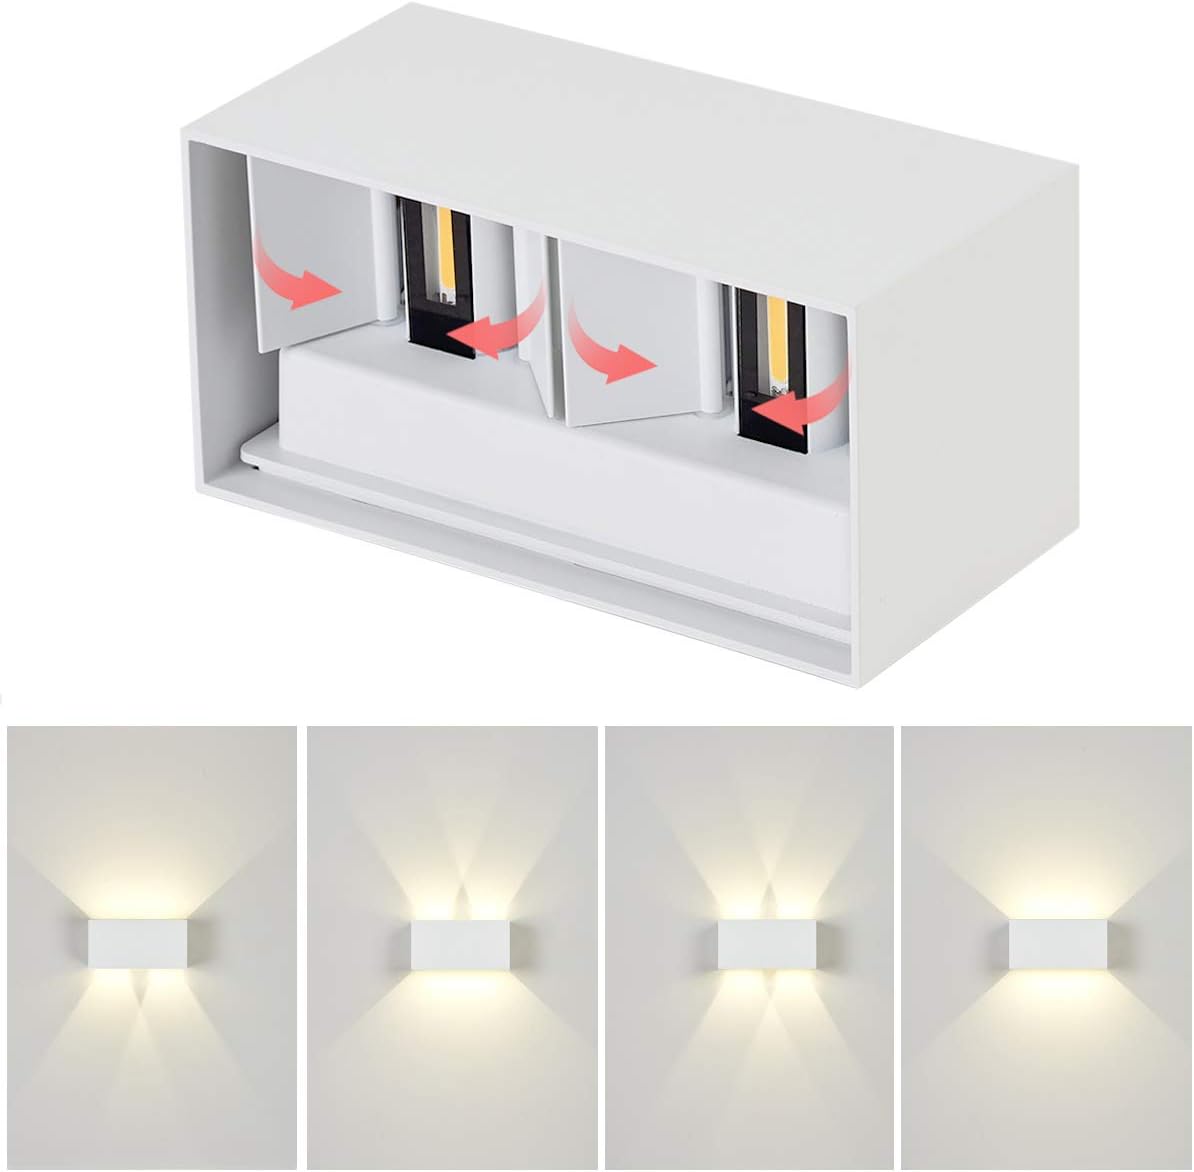 Dr.lazy 20W Dekorative Wandlampen,wasserdicht IP65 LED-Wandbeleuchtung im Innen-und Außenbereich, Einstellbarer Lichtstrahl, Außenwandleuchten 4000K Naturweiß (Weiß/Naturweiß)